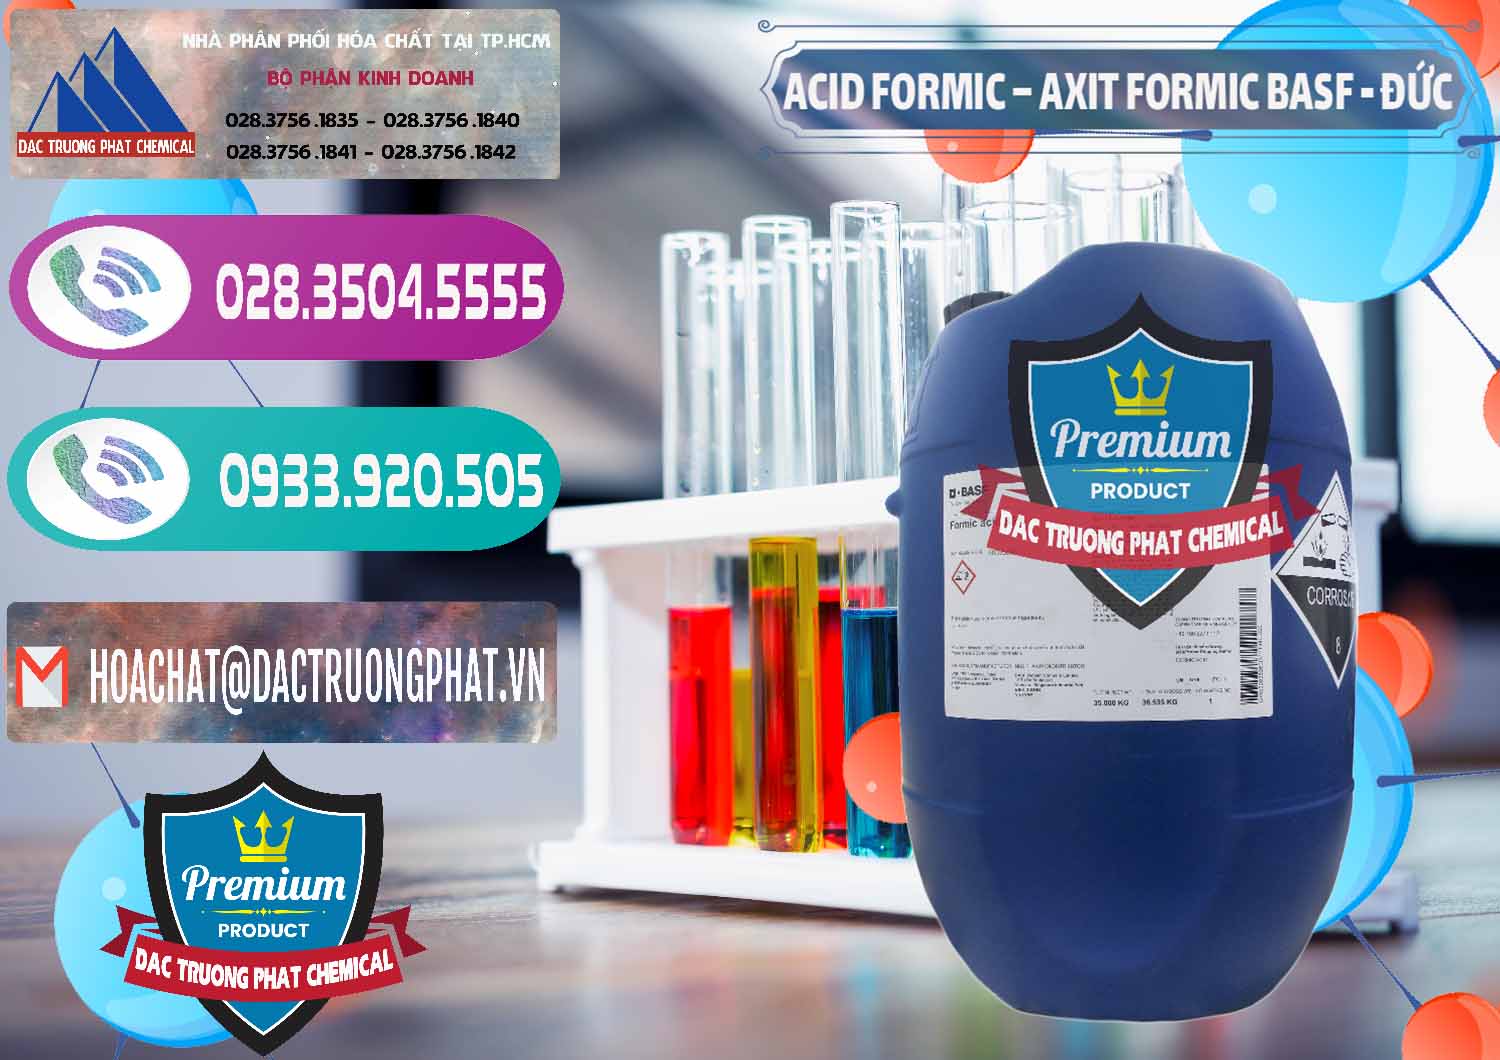 Cty cung ứng & bán Acid Formic - Axit Formic BASF Đức Germany - 0028 - Chuyên phân phối - cung ứng hóa chất tại TP.HCM - hoachatxulynuoc.com